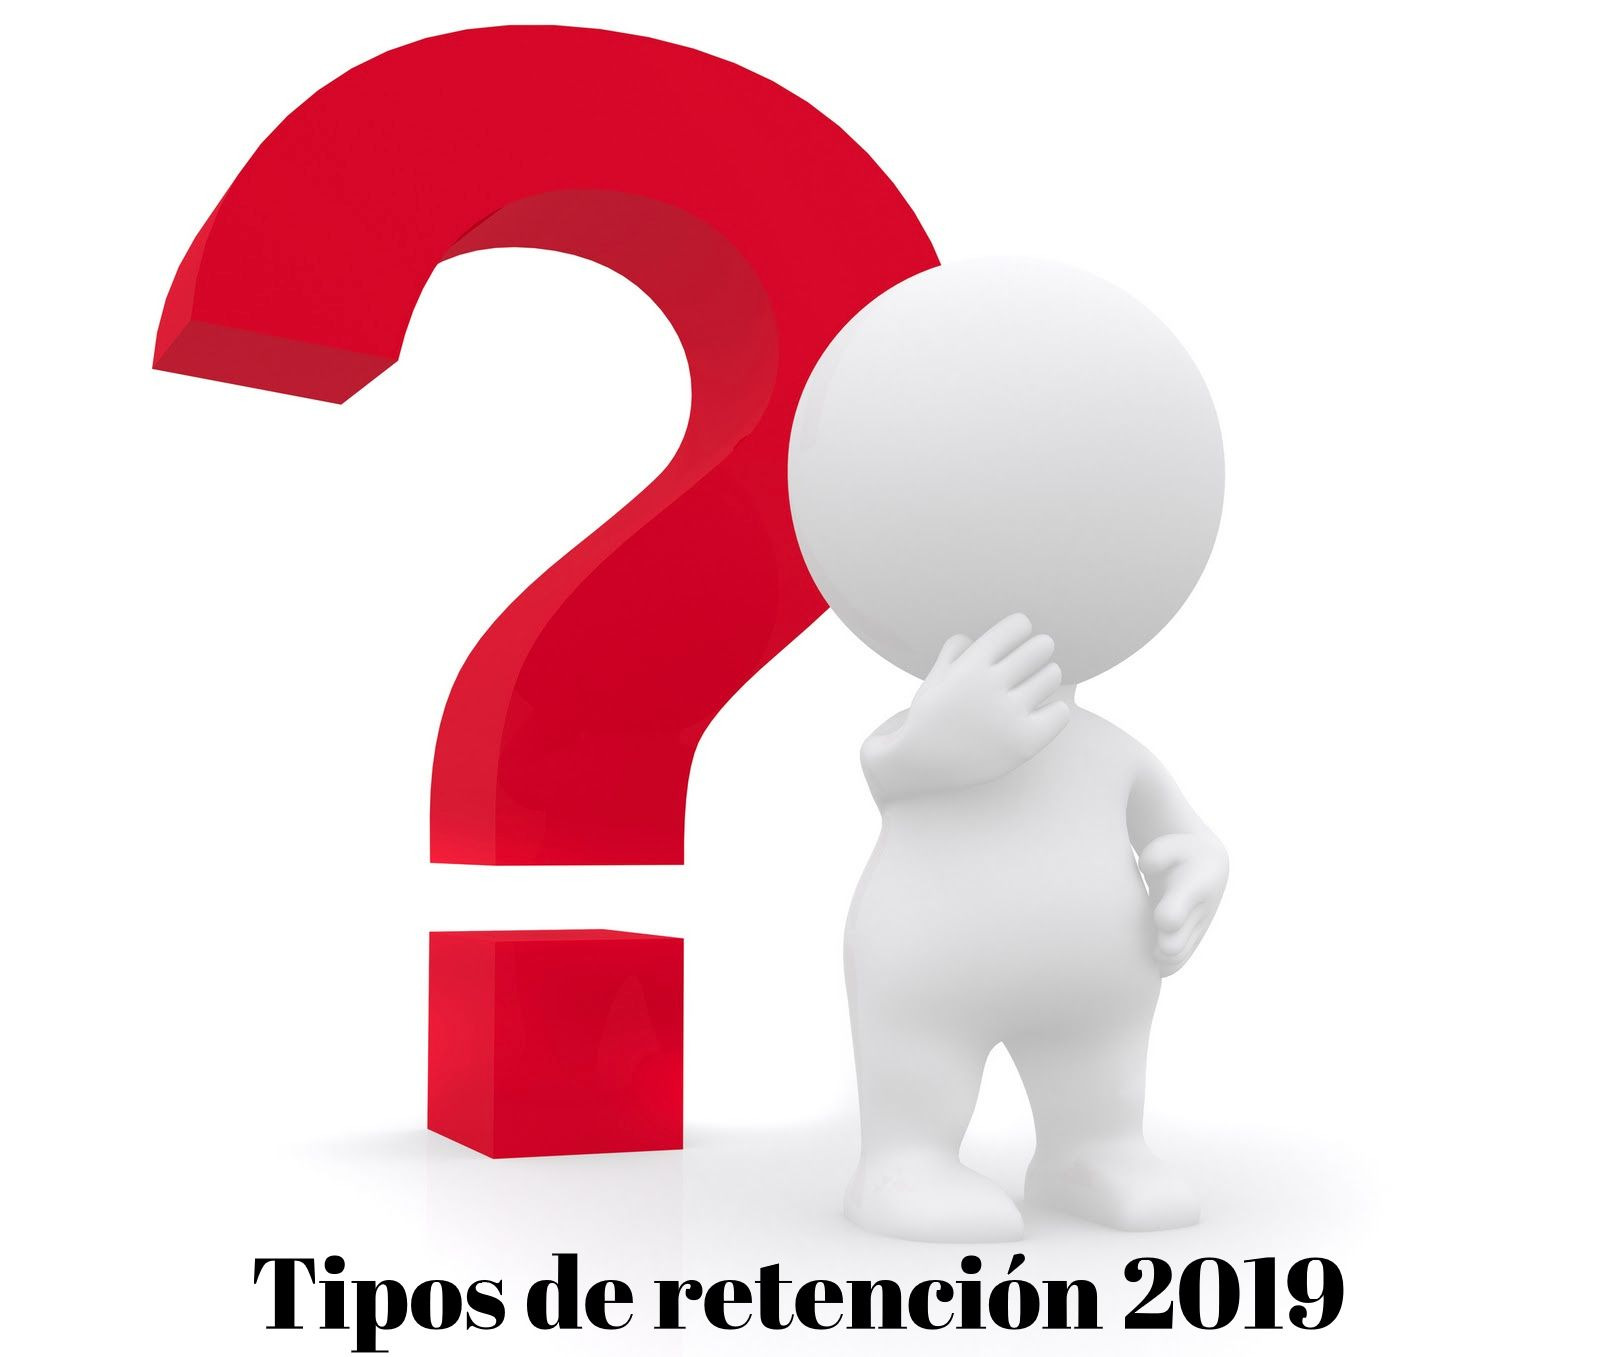 TIPOS DE RETENCIÓN PARA EL AÑO 2019